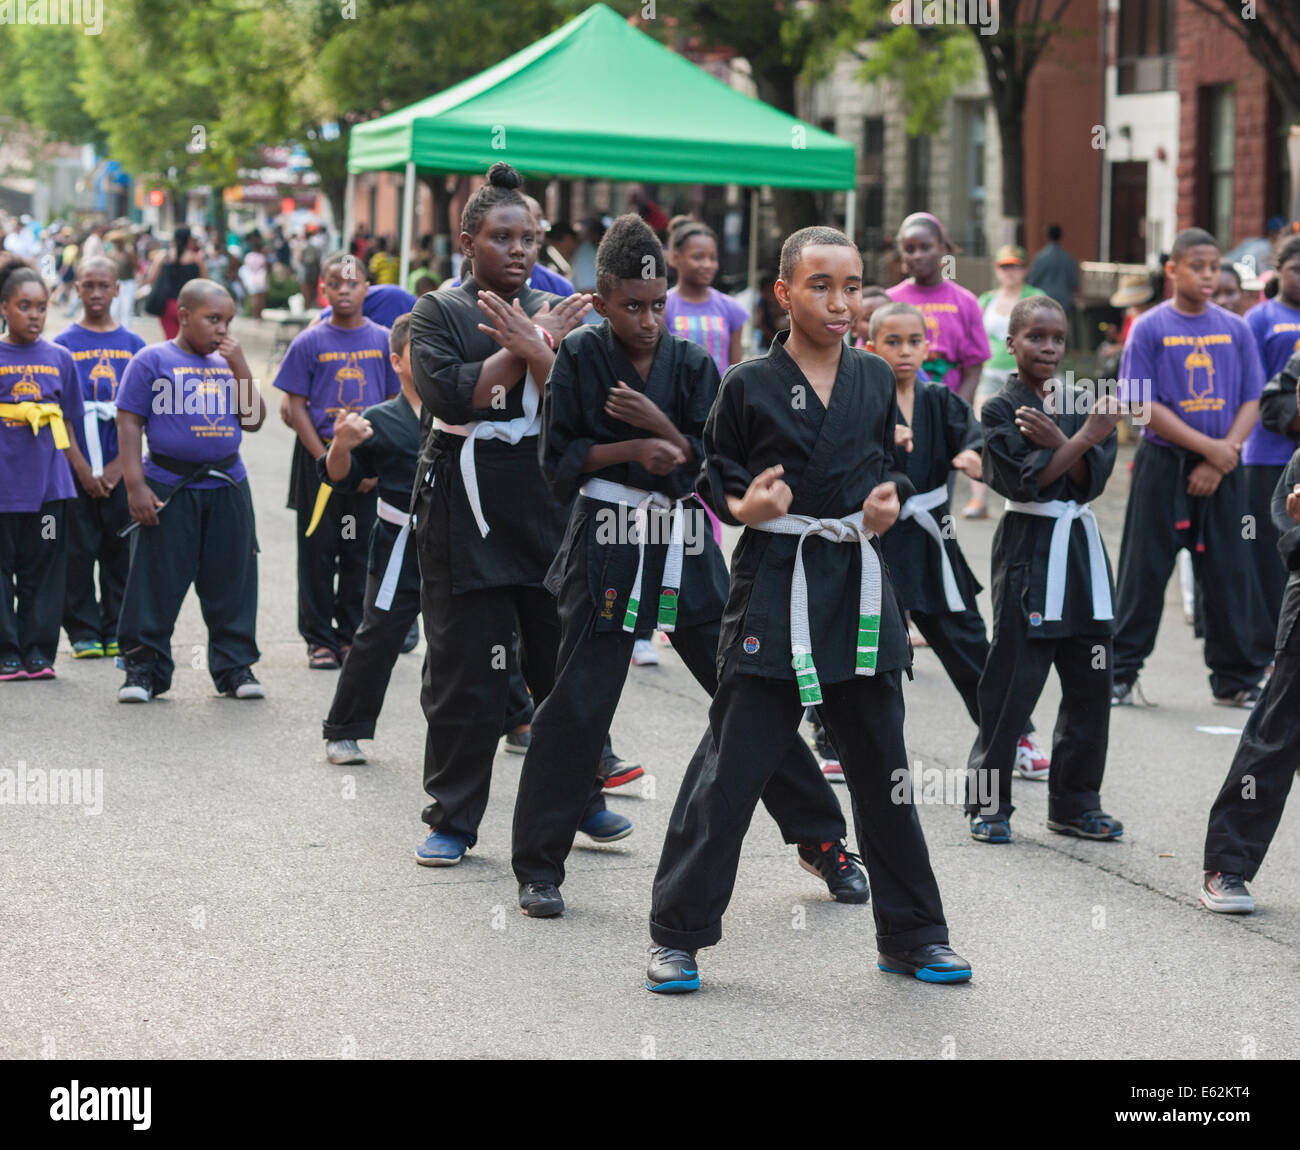 Grupo afroamericano da una demostración de artes marciales en Harlem en Nueva York durante una feria de la calle Foto de stock